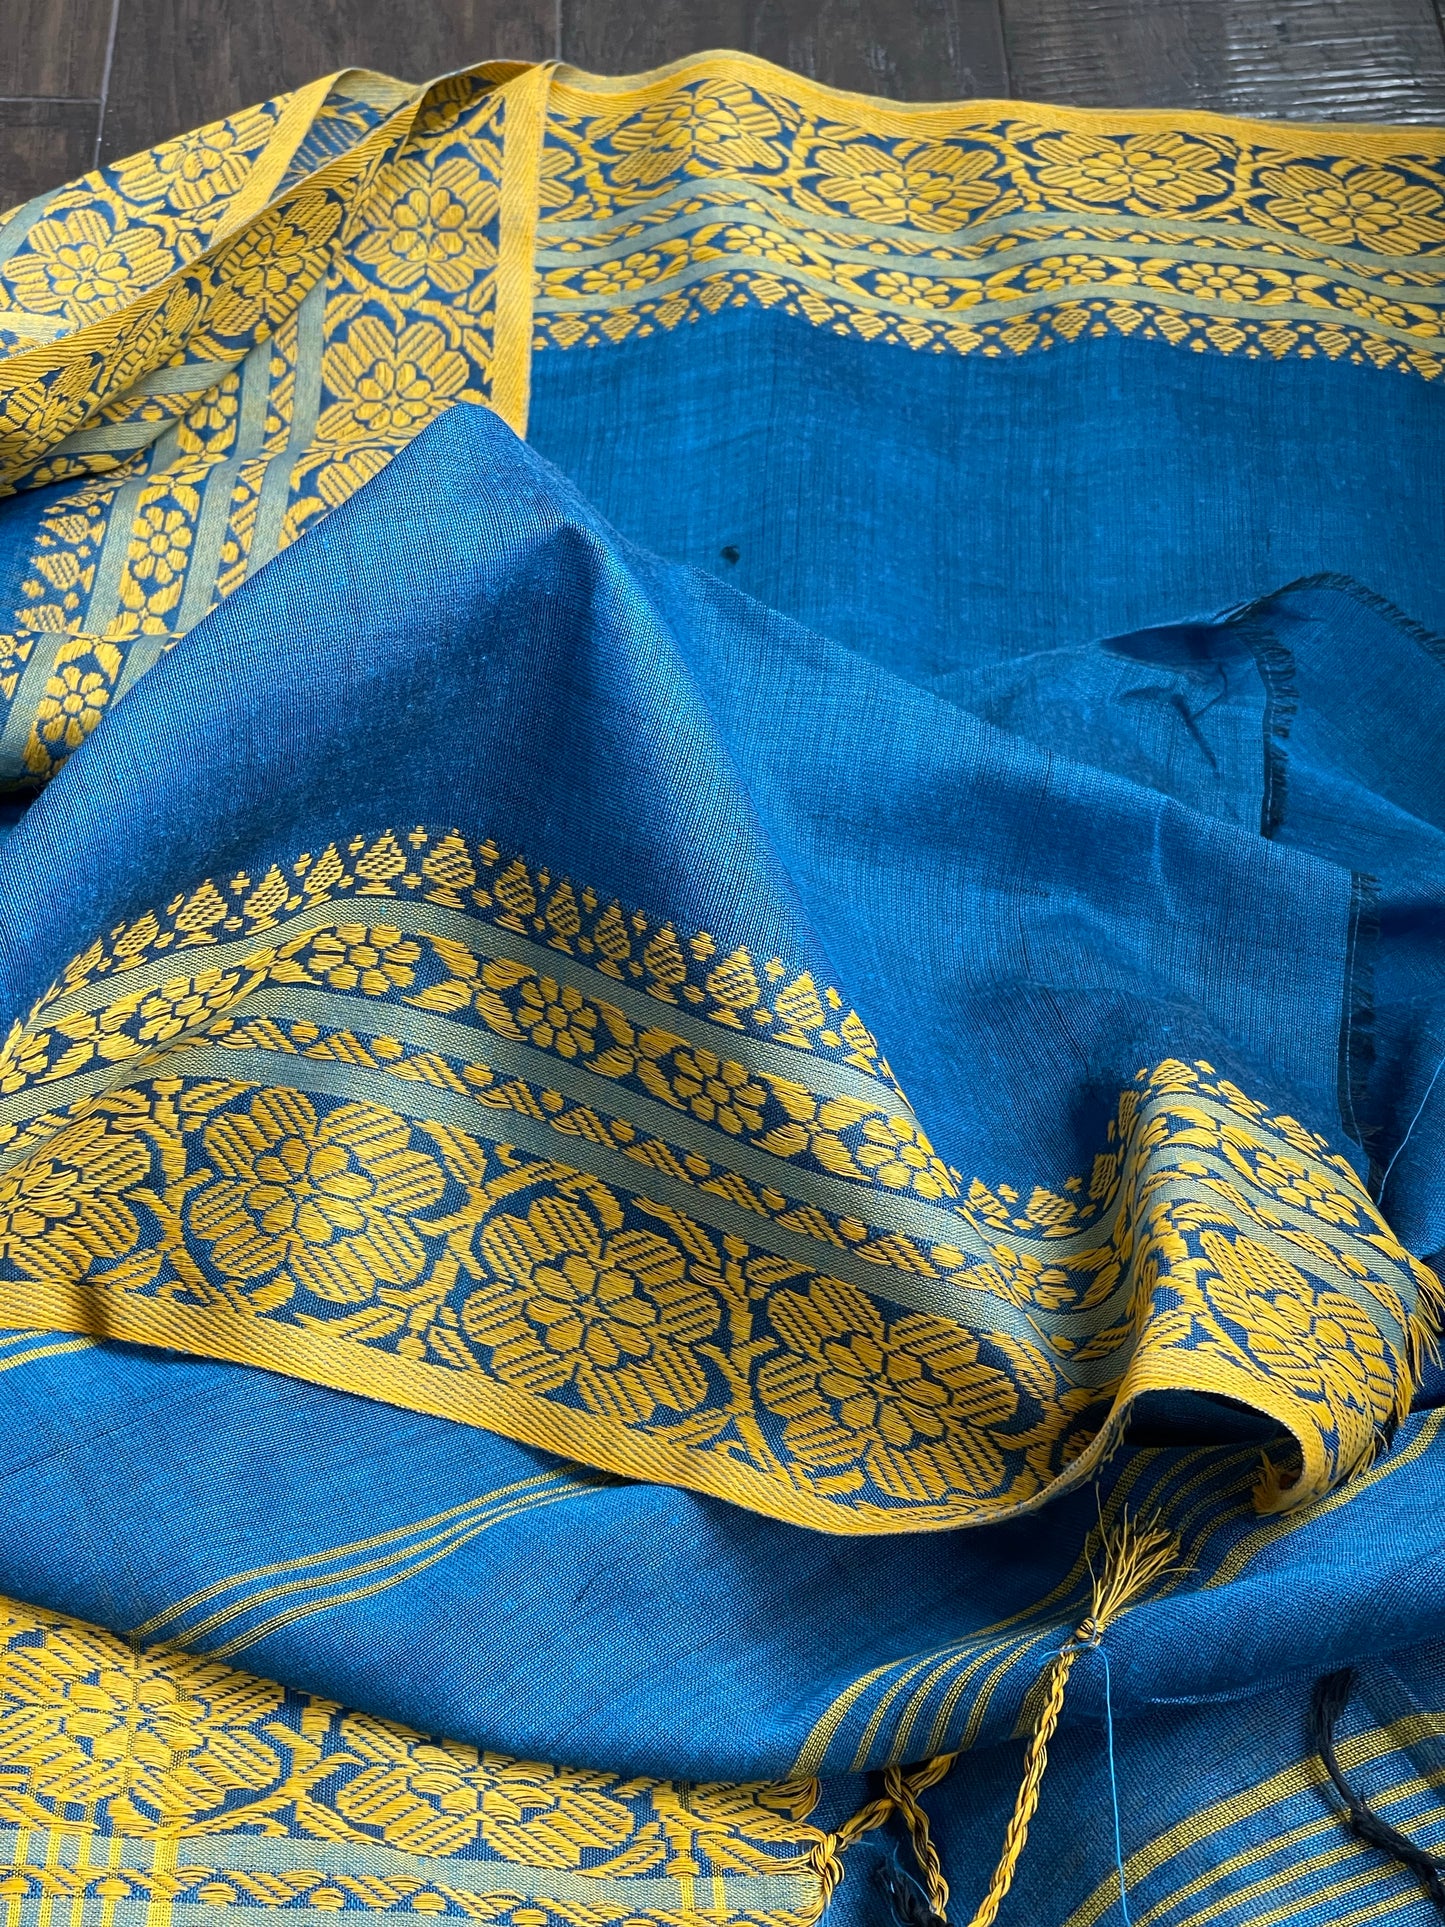 Begampuri Cotton Saree - Blue Yellow Woven